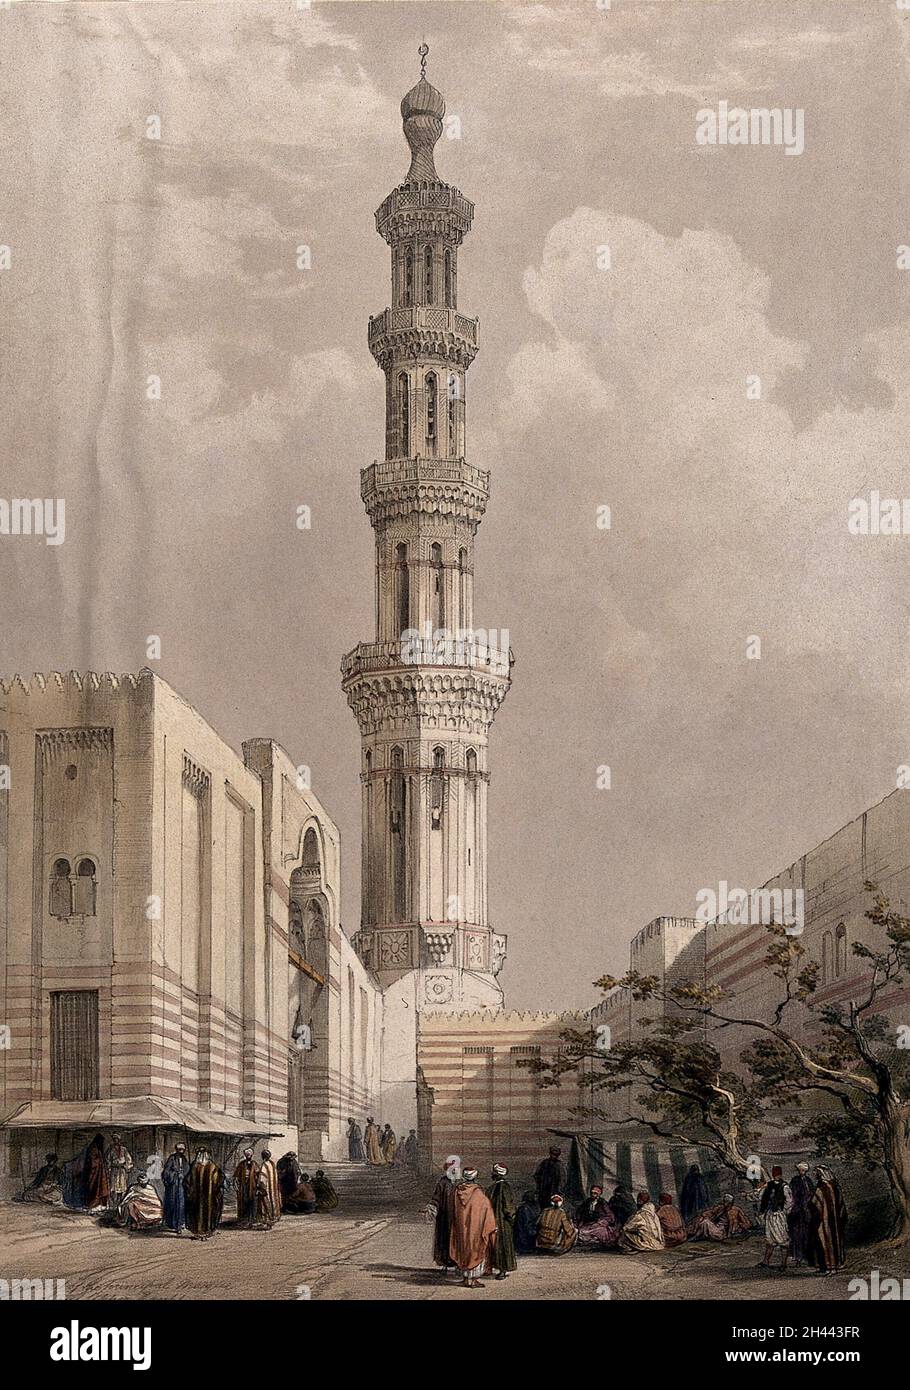 Minaret de la mosquée principale à Siout.Lithographie colorée par Louis Haghe d'après David Roberts, 1849. Banque D'Images